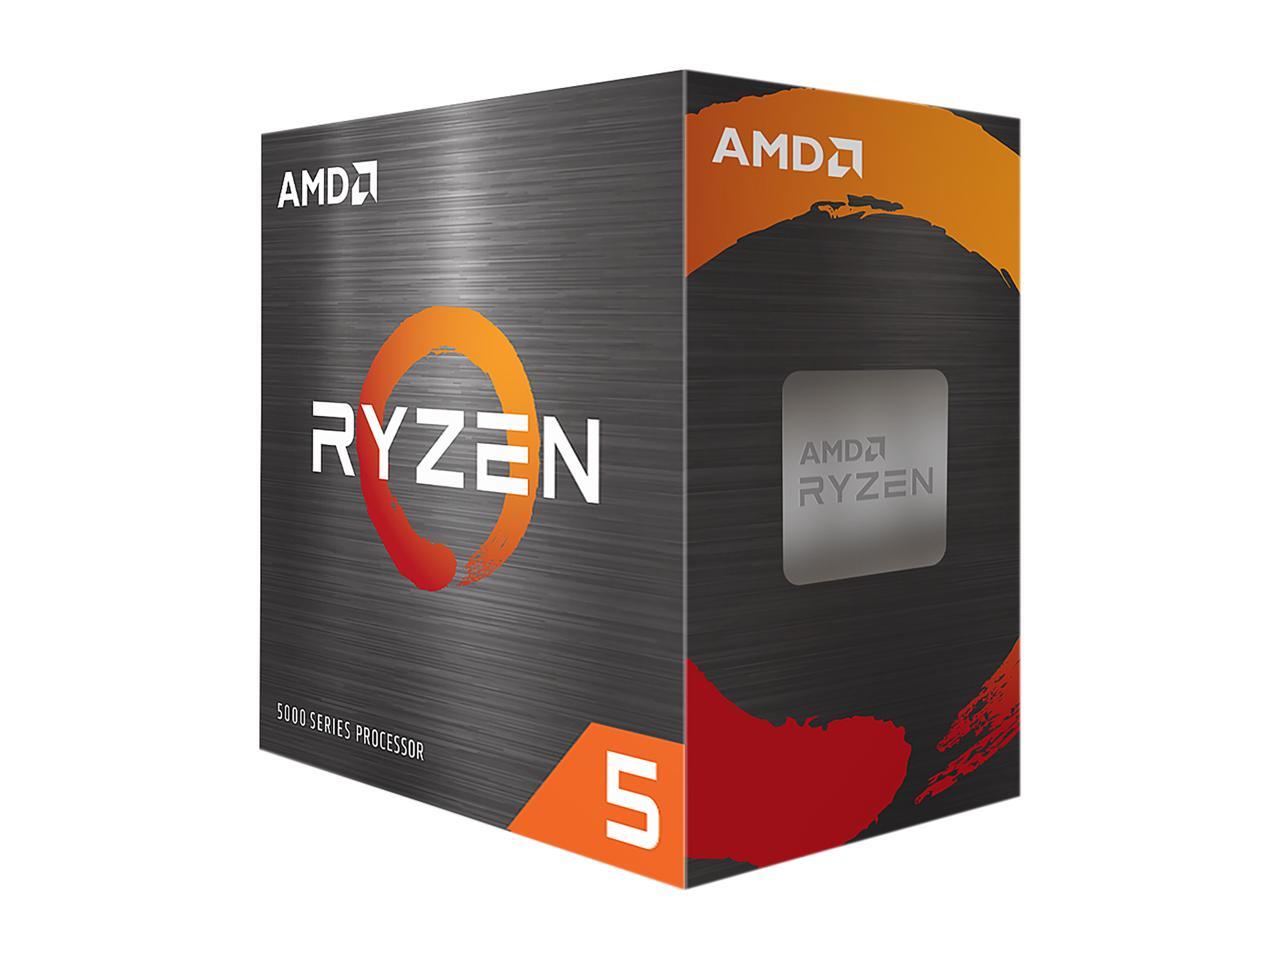 AMD Ryzen 5 5600 6-Core 3.5GHz AM4 65W Desktop Processor $150